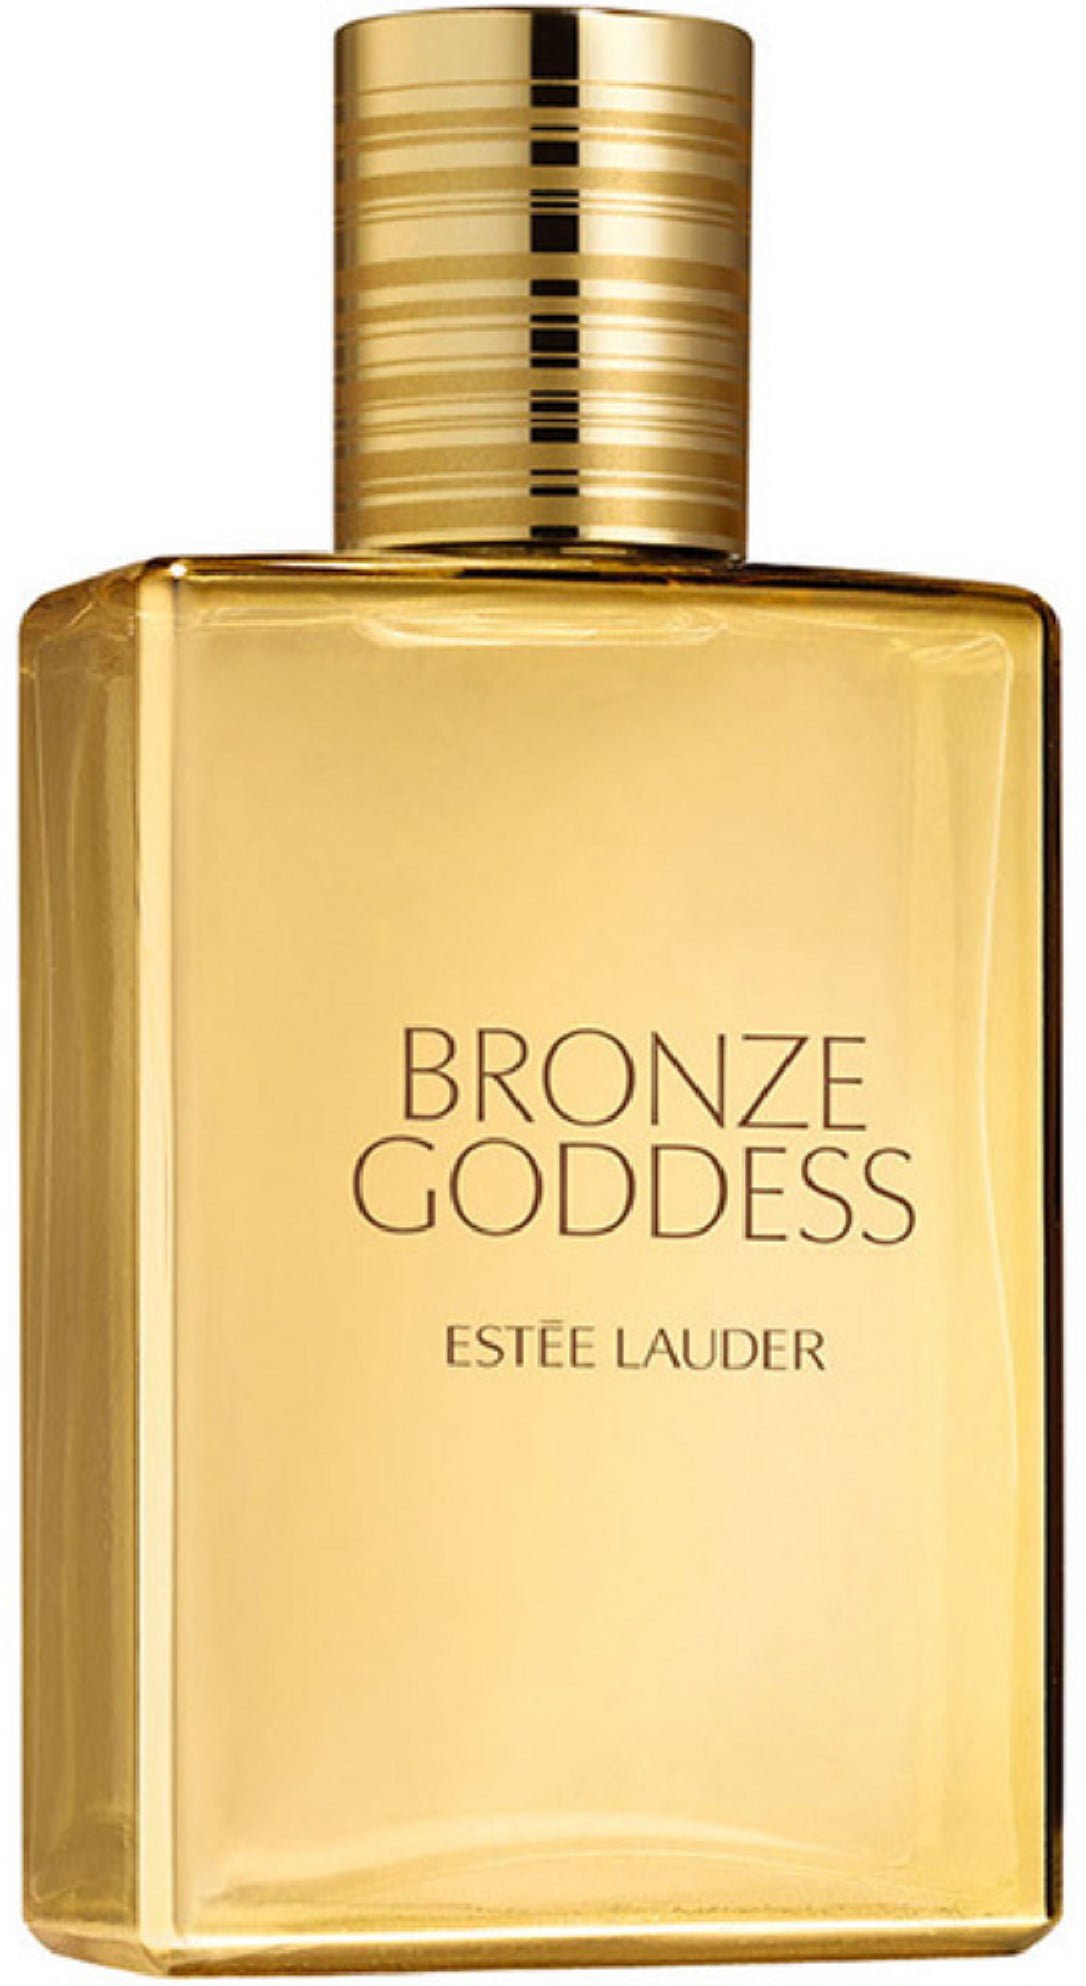 Estee Lauder Bronze Goddess Eau Fraiche for Women, 3.4 Oz - Walmart.com